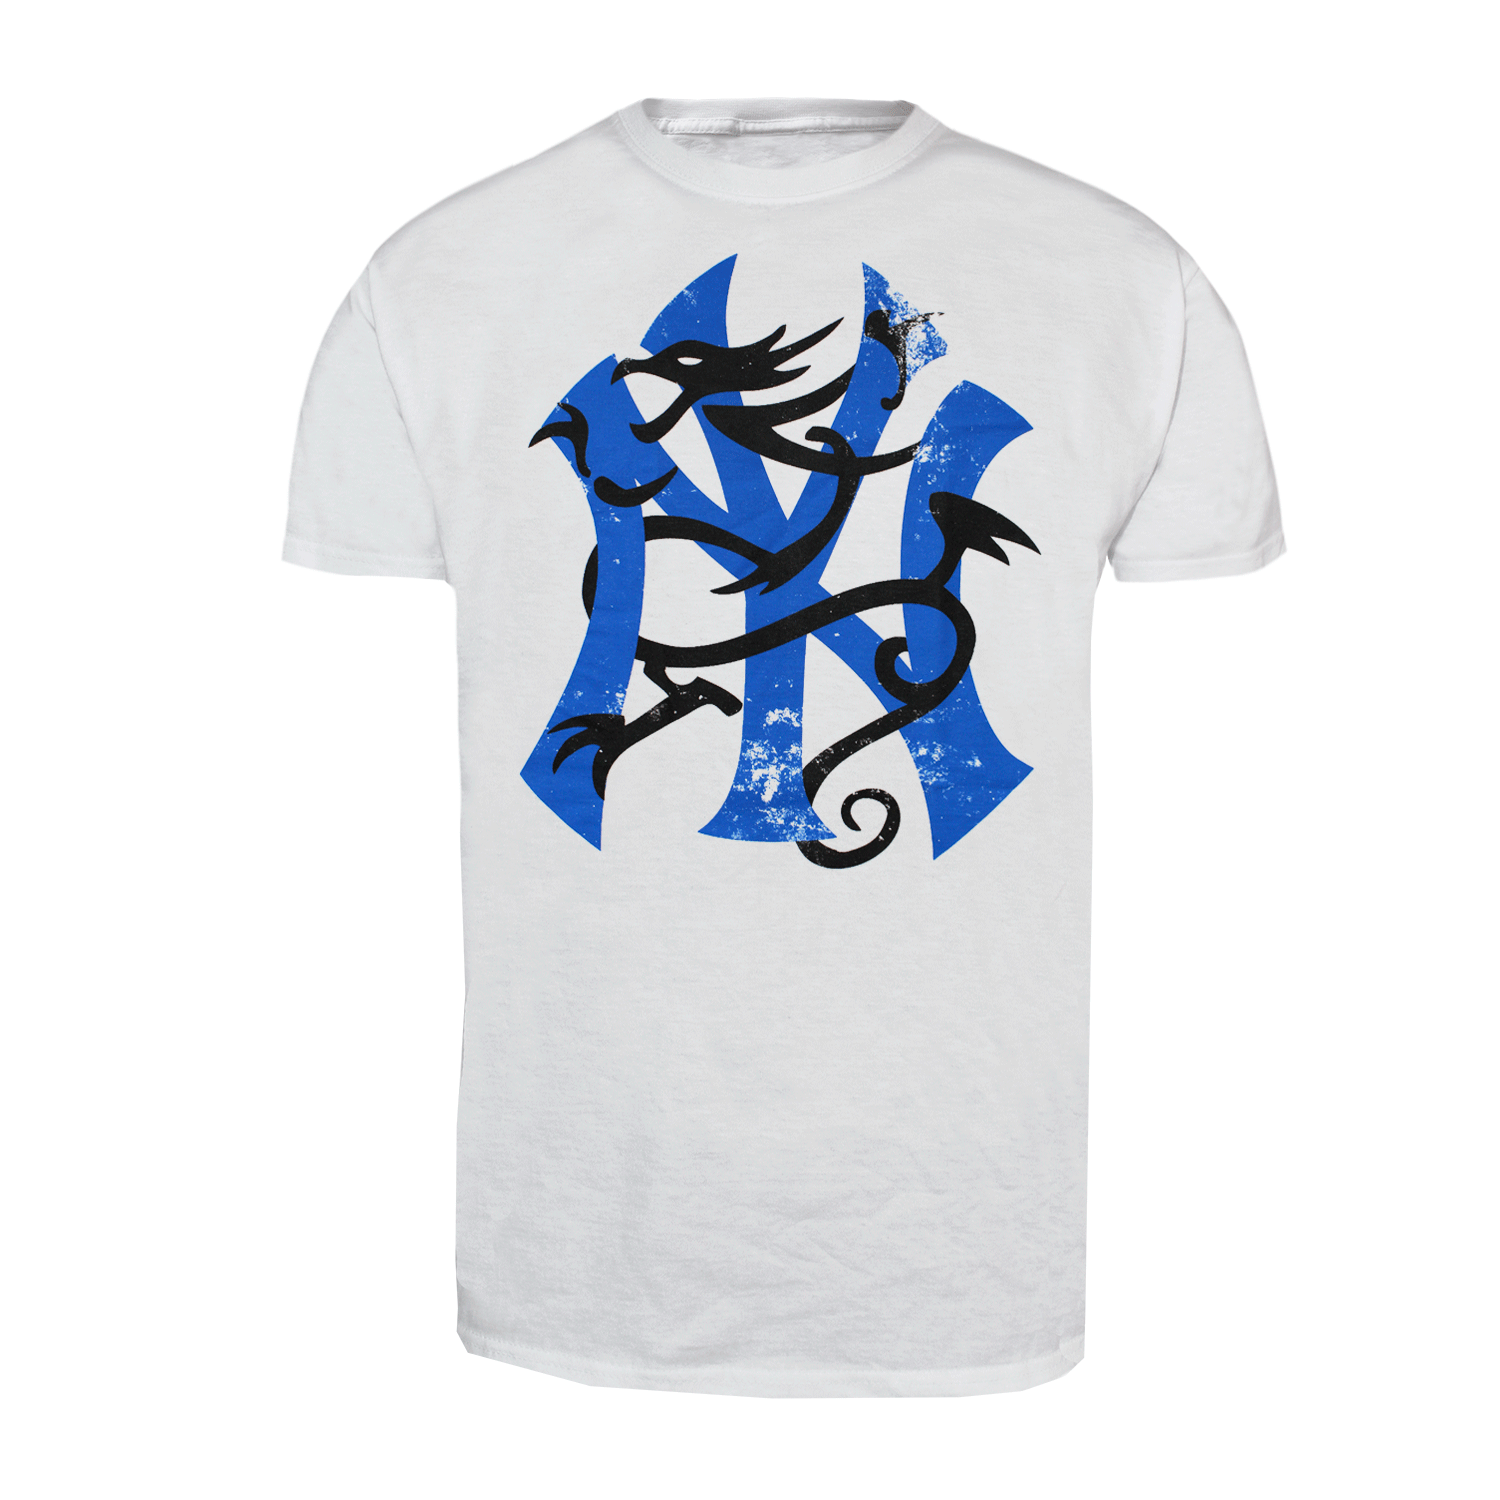 Sick of it all "NY Dragon" T-Shirt (white) - Premium  von Rage Wear für nur €9.90! Shop now at Spirit of the Streets Mailorder